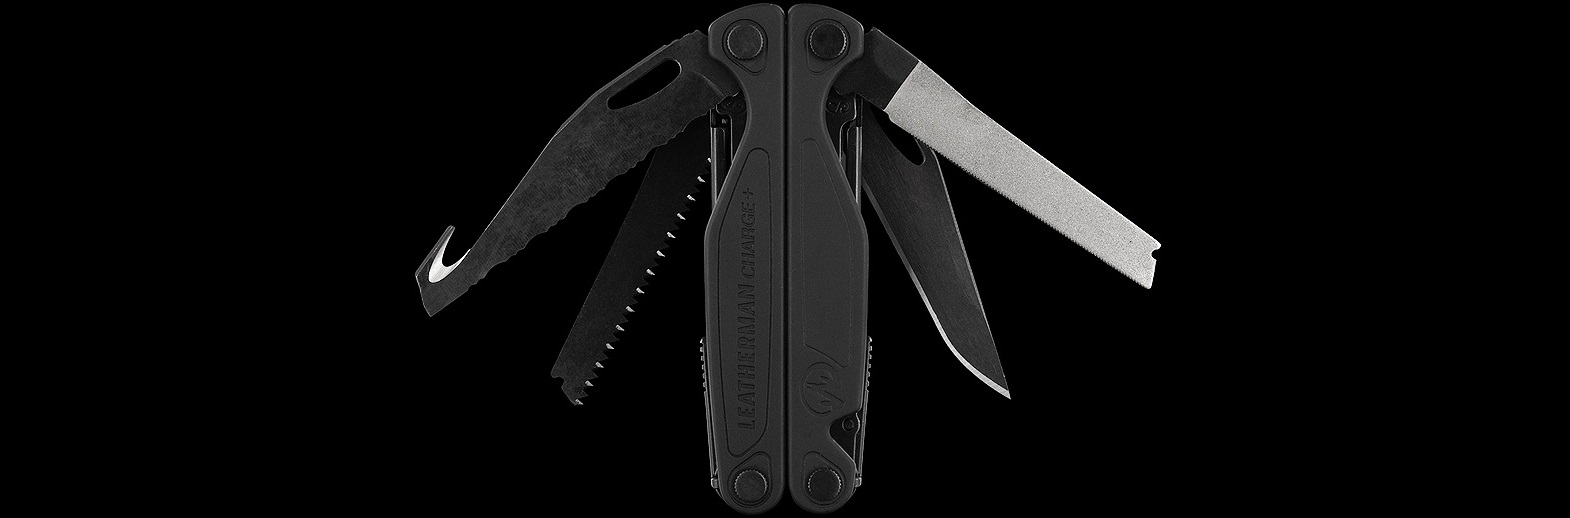 Многофункциональный инструмент Leatherman Charge Plus Black 832601 с лезвием ножа из стали 154CM